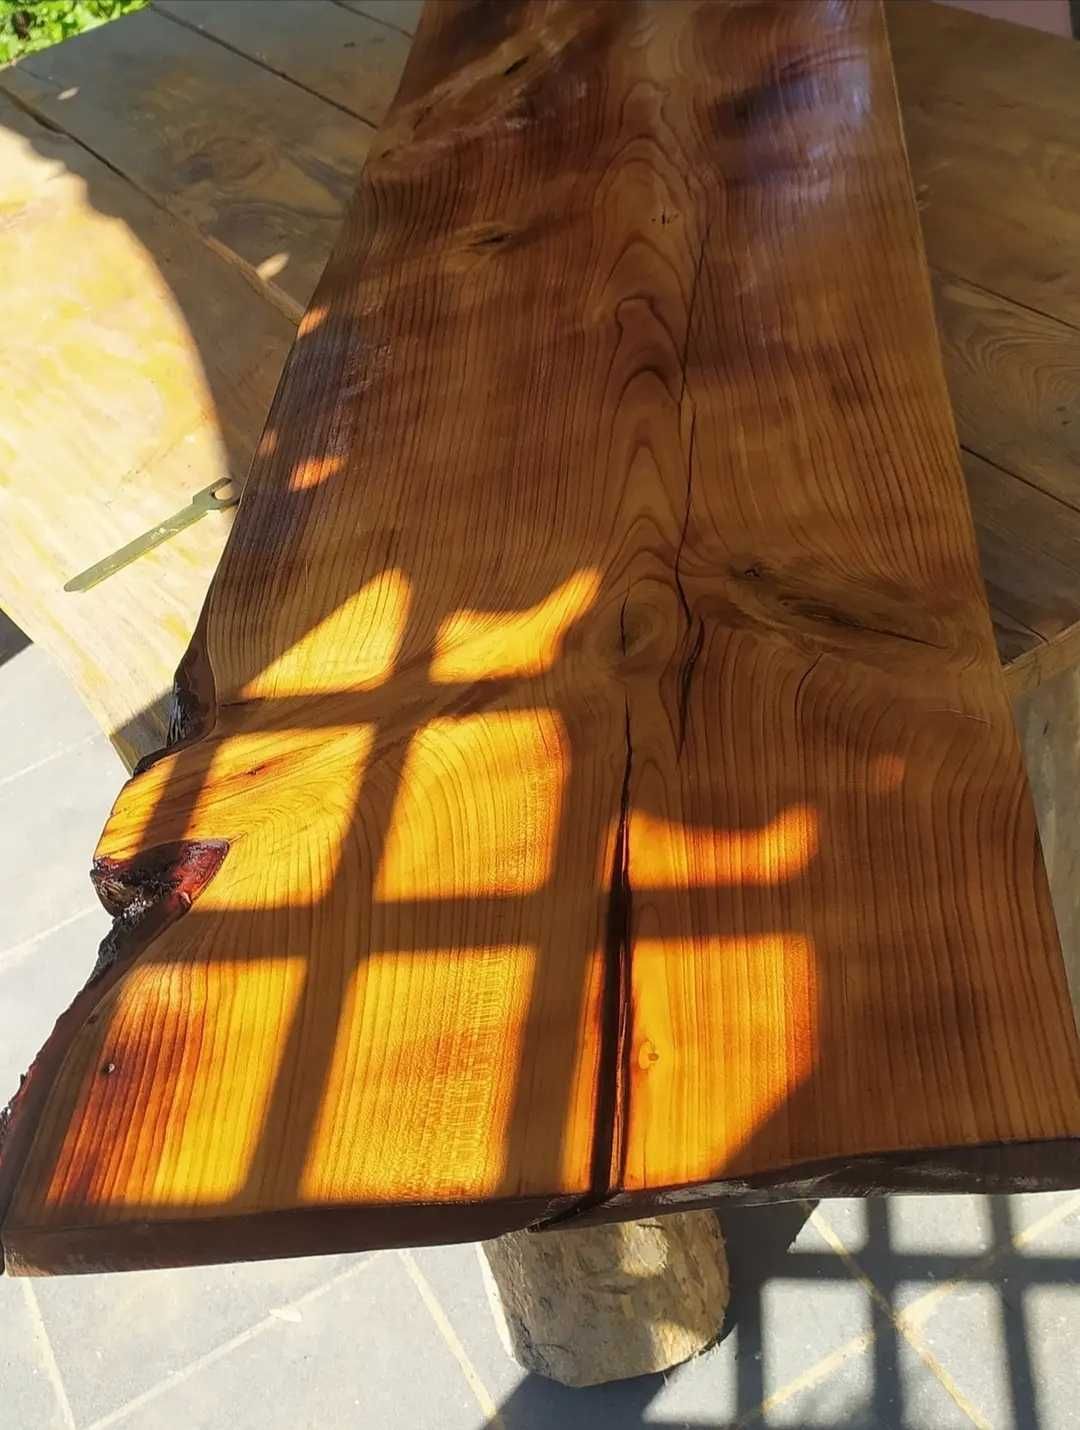 Blat półka foszt czereśnia drewniana drewno